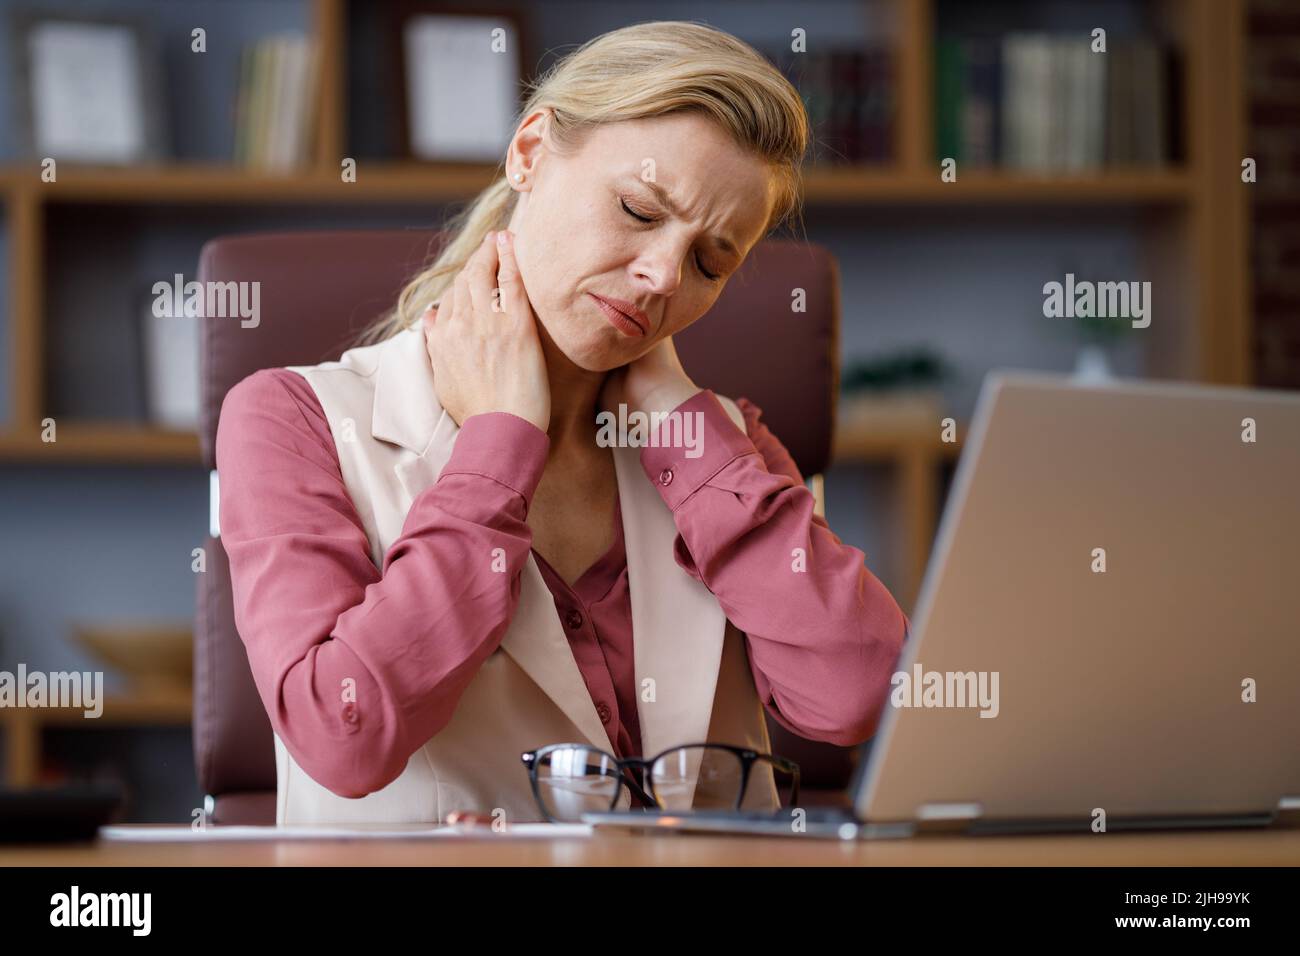 Müde Geschäftsfrau nach anstrengenden Papierkram Ausziehen der Brille Gefühl nackter Schmerzen. Kopfschmerzen, Sehstörungen, chronische Müdigkeit und Überanstrengung der Augen Stockfoto